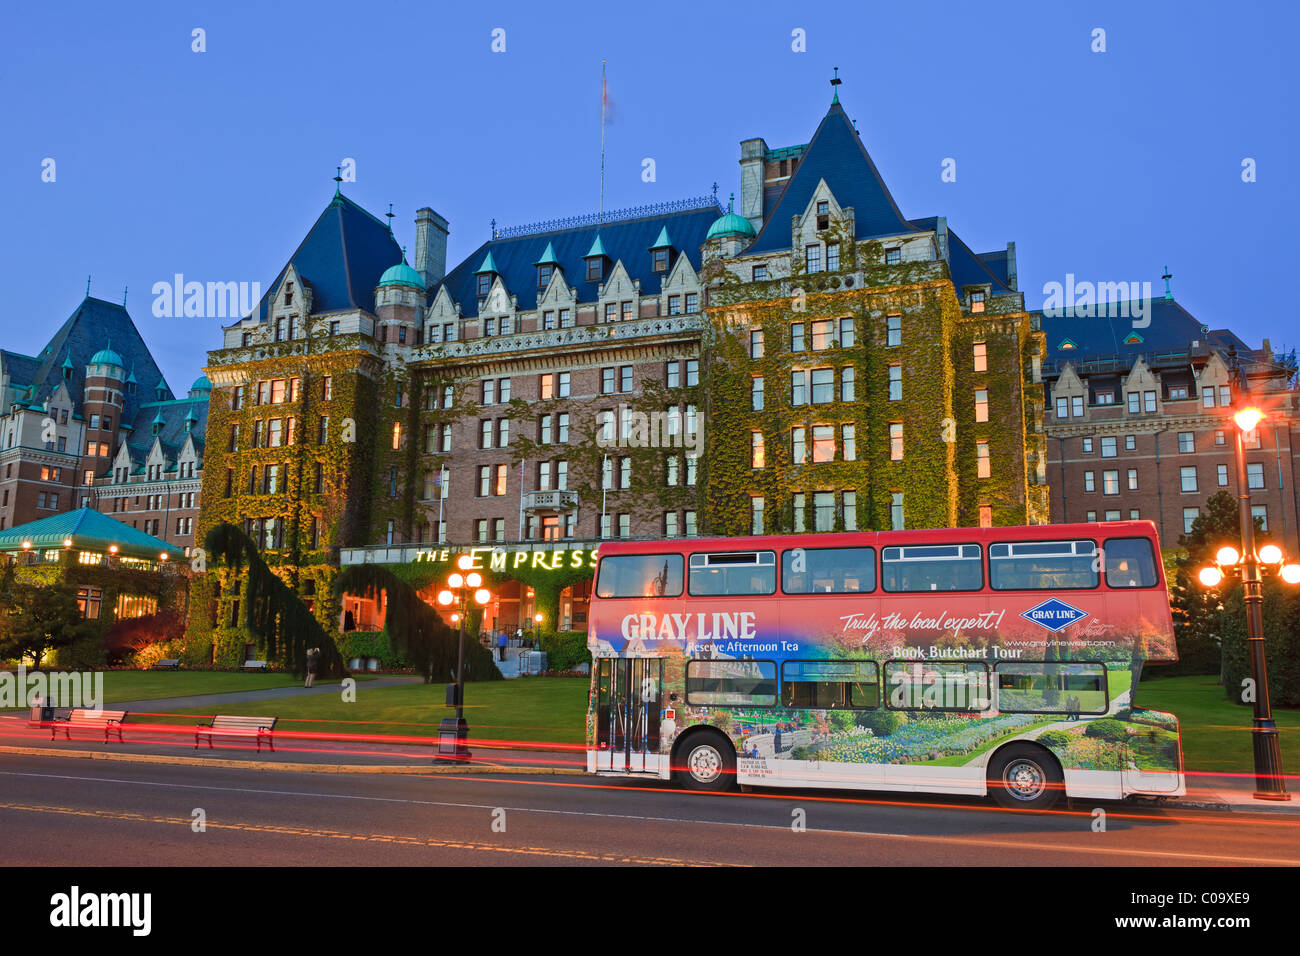 L'hôtel Empress, un site célèbre dans le port intérieur de Victoria, éclairé au crépuscule avec un tour bus rouge Banque D'Images